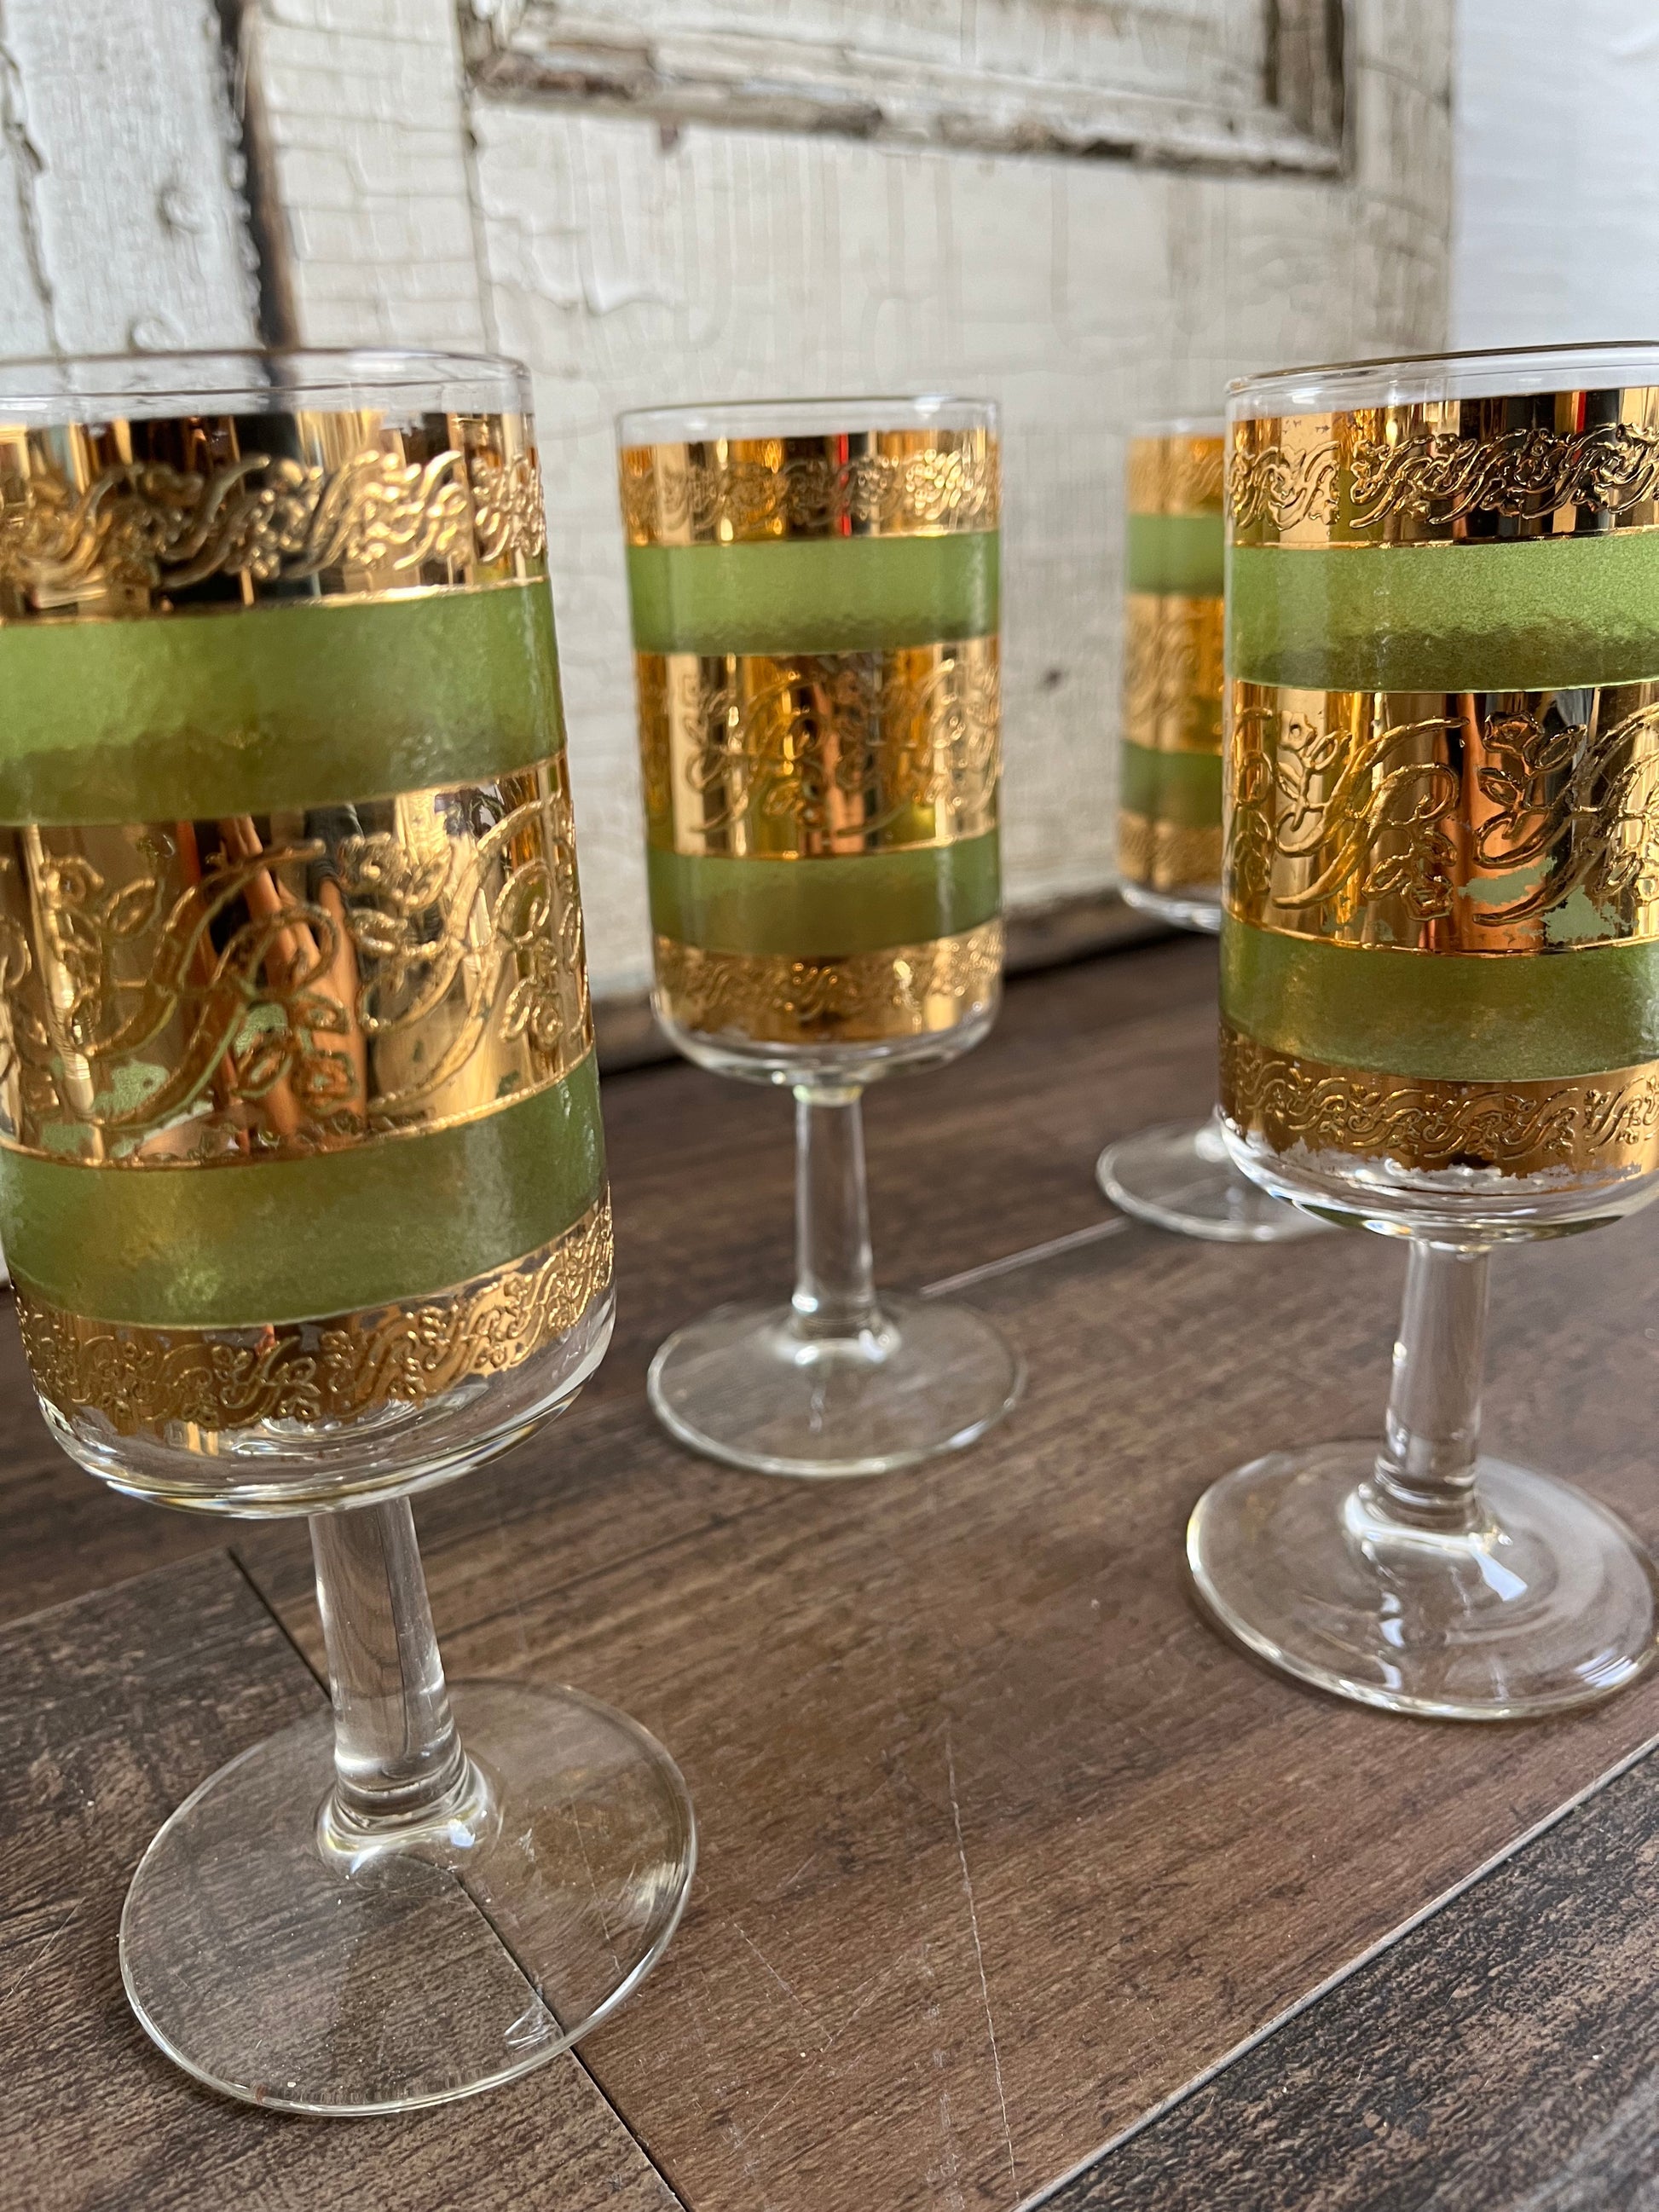 Vintage Emerald Stemmed Cocktail Glasses- Set of 12